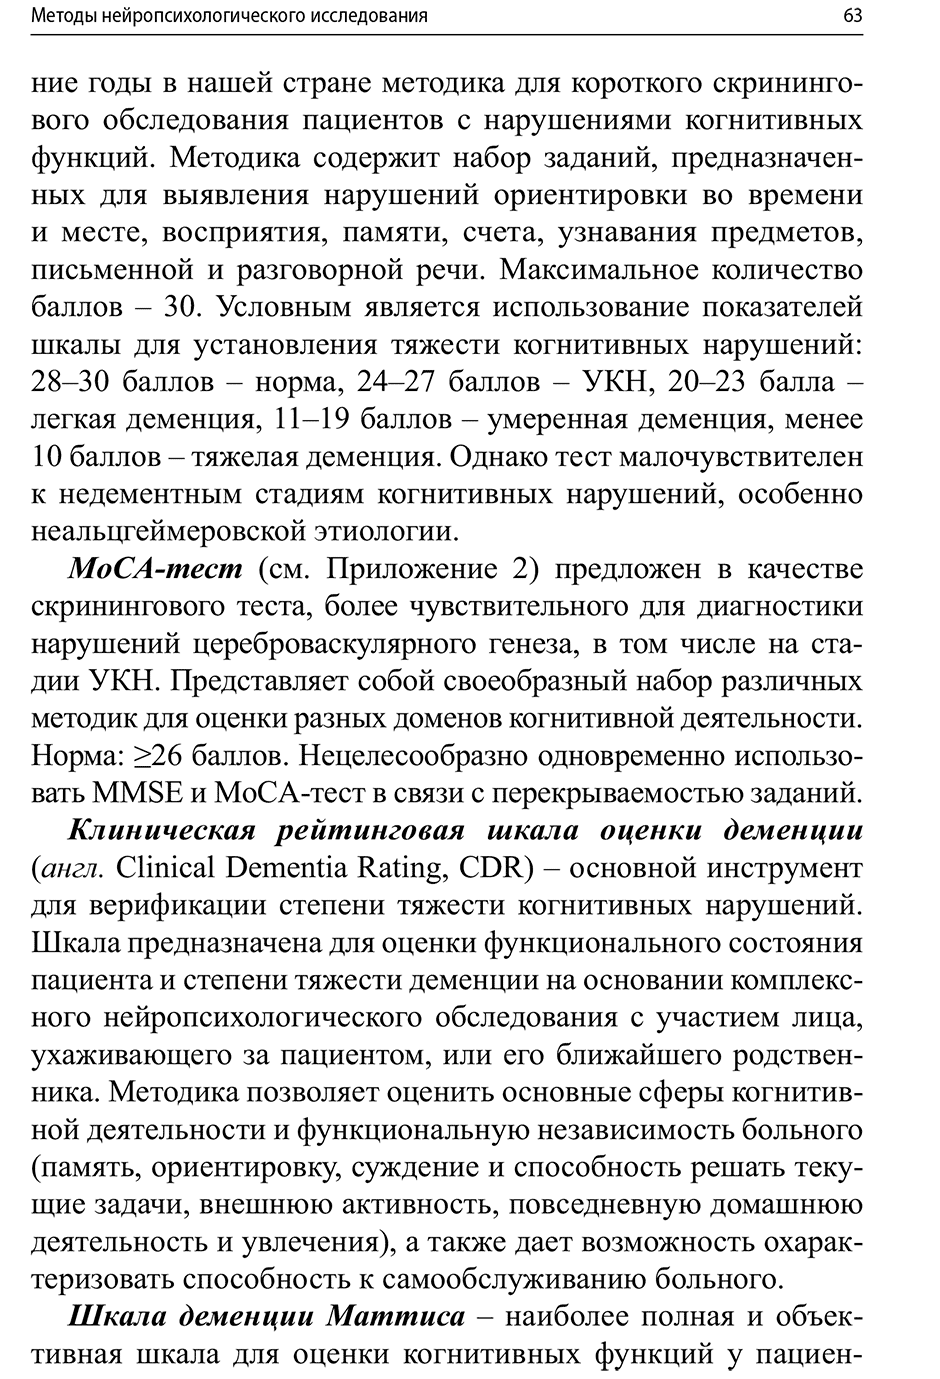 Пример страницы из книги "Когнитивные нарушения: руководство для врачей" - А. Ю. Емелин, В. Ю. Лобзин, С. В. Воробьёв